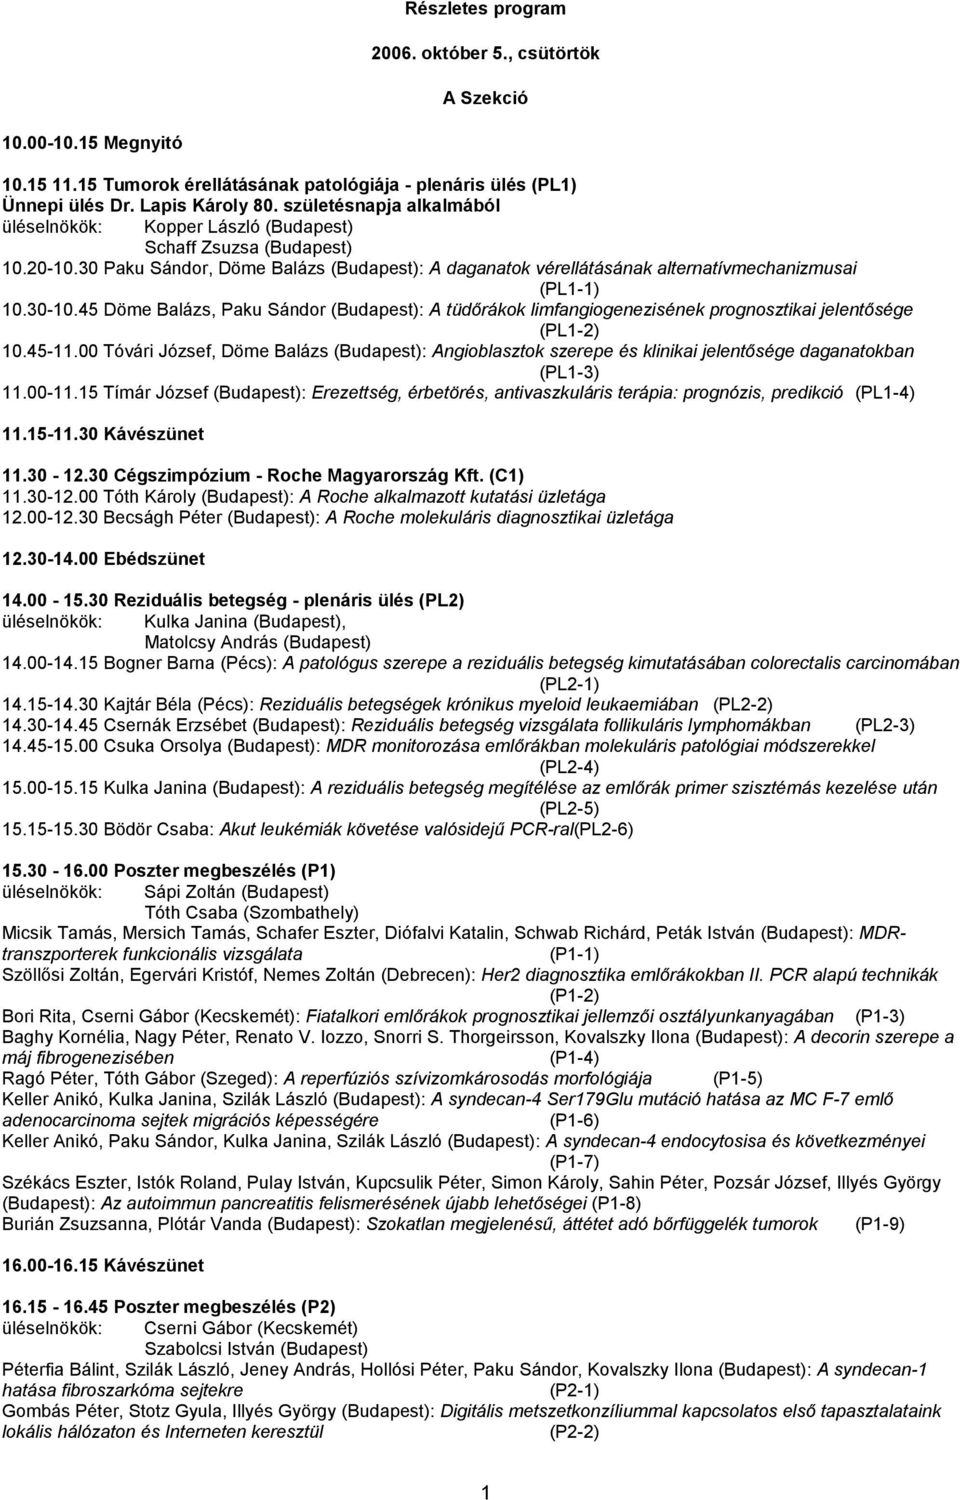 30-10.45 Döme Balázs, Paku Sándor (Budapest): A tüdőrákok limfangiogenezisének prognosztikai jelentősége (PL1-2) 10.45-11.